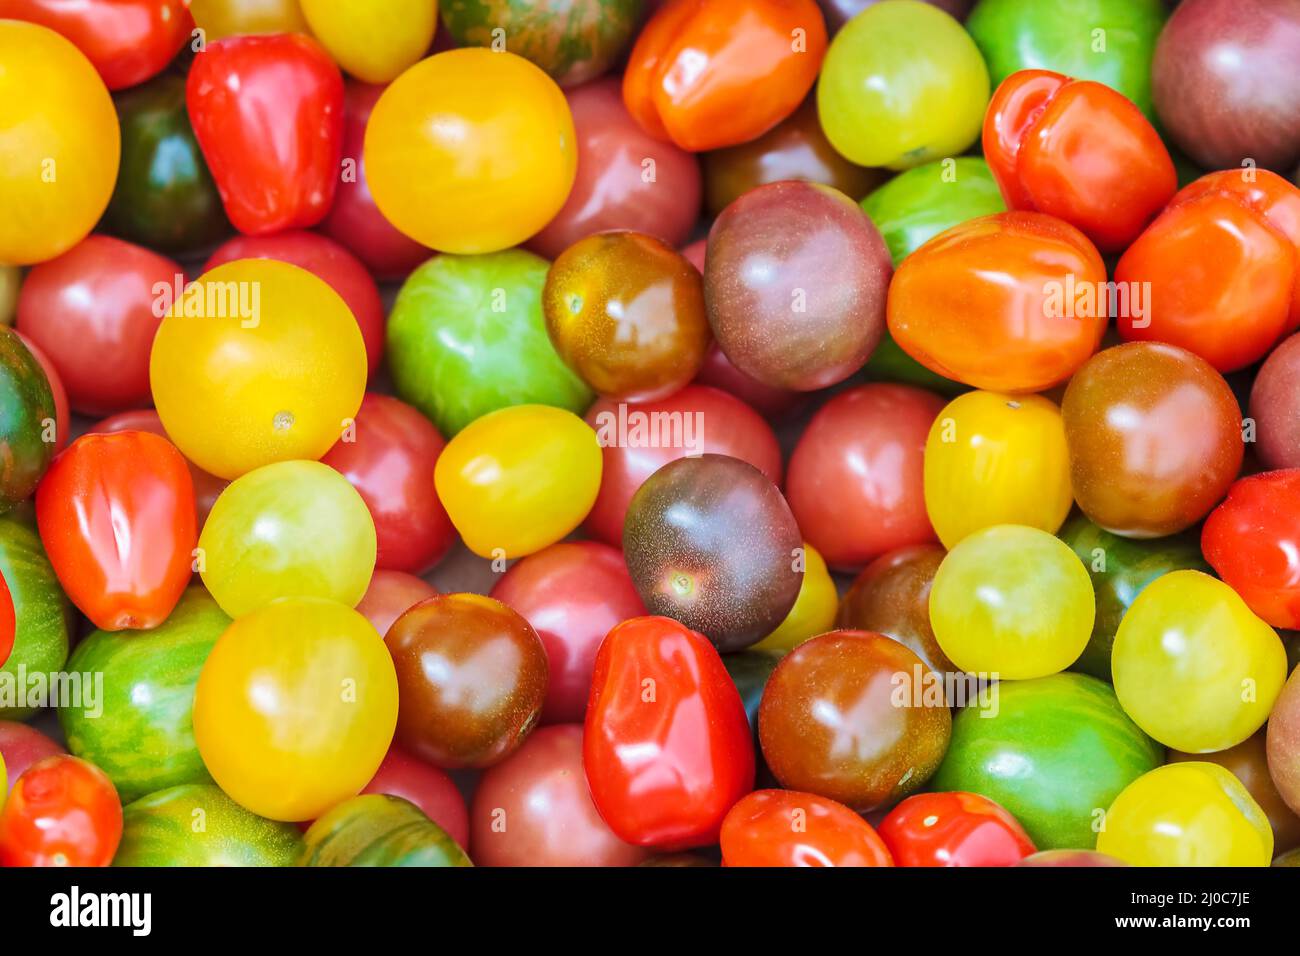 Pomodori ciliegini freschi in diversi colori in mostra in un mercato di alimentari Foto Stock